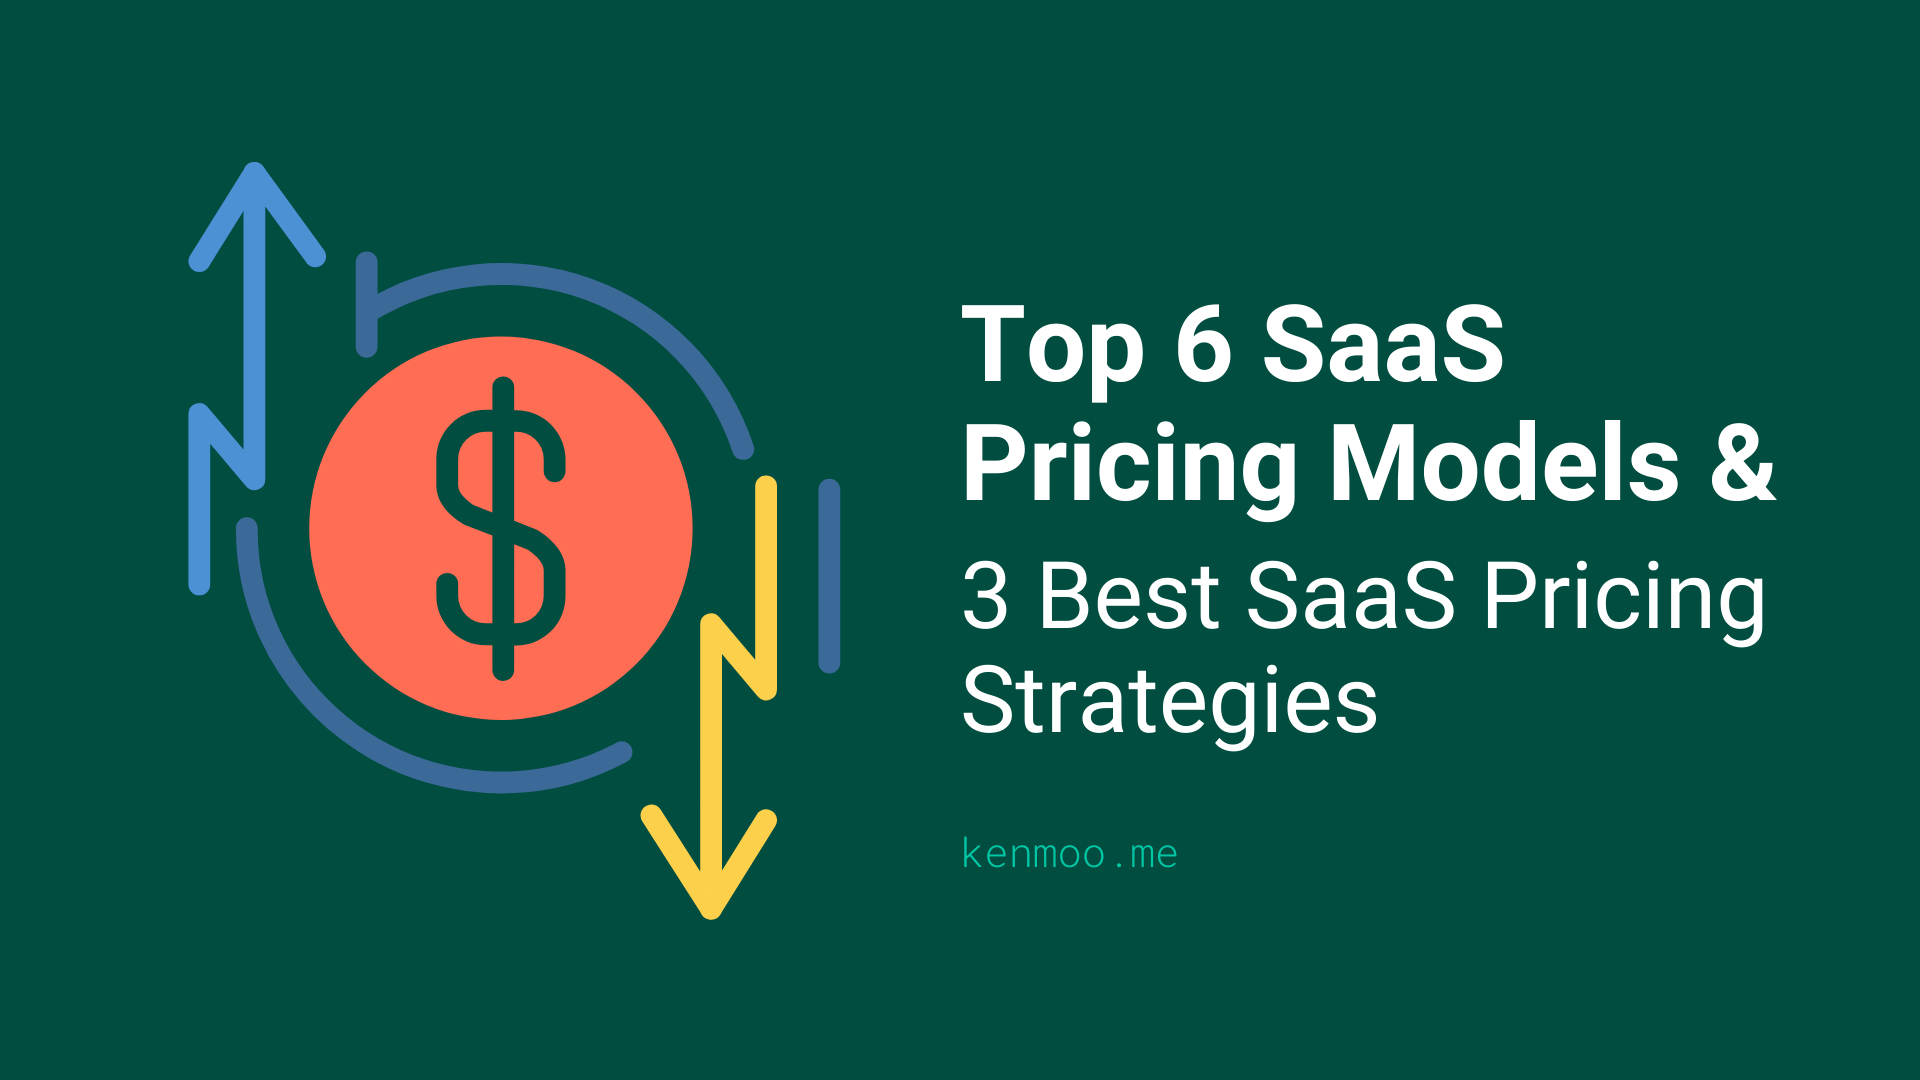 Top 6 SaaS Pricing Models and 3 Best SaaS Pricing Strategies